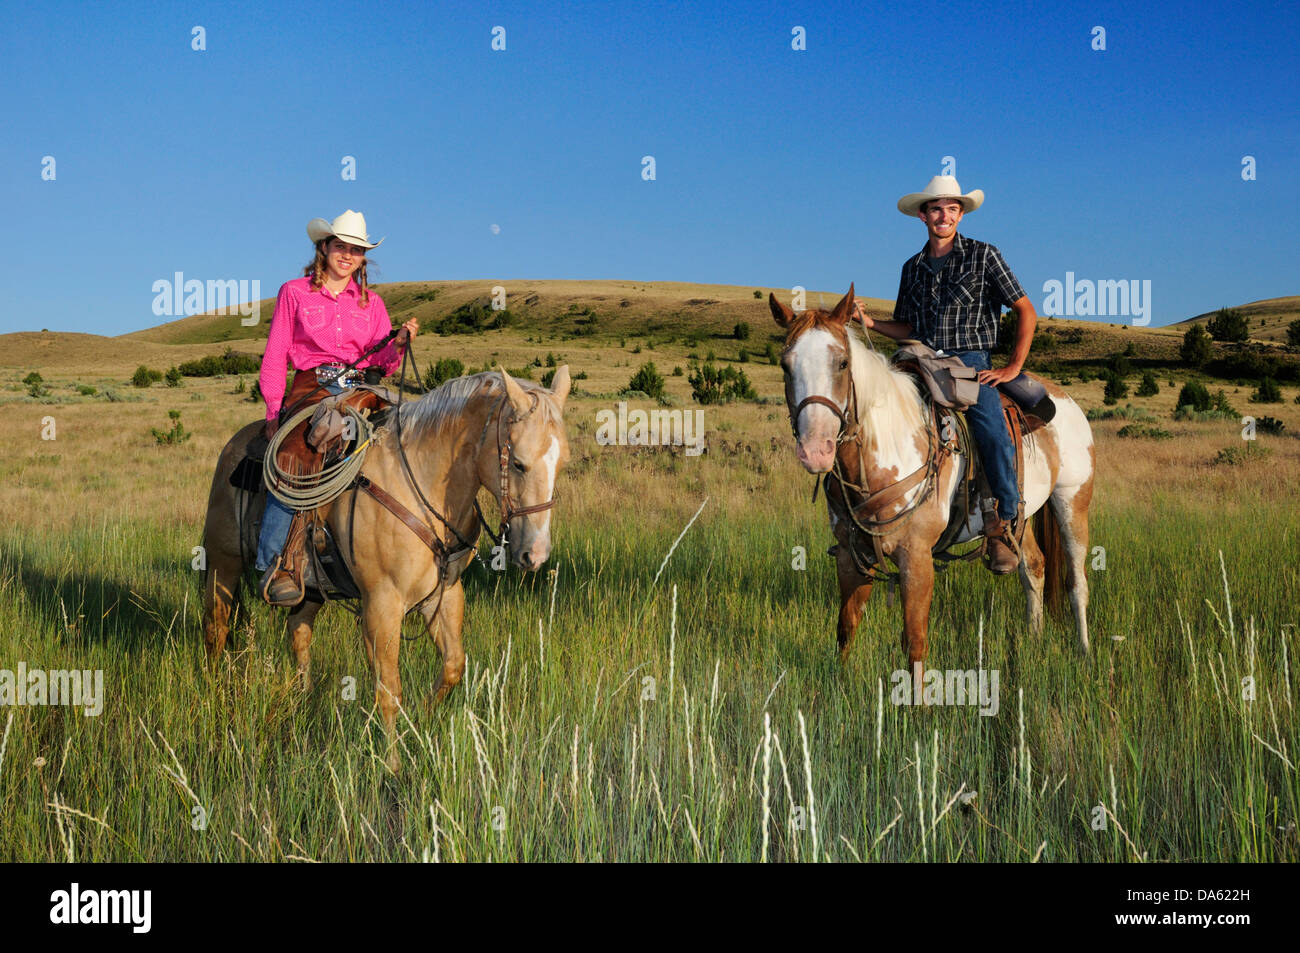 Pacific Northwest, Oregon, Stati Uniti d'America, Stati Uniti, America, equitazione, escursioni a cavallo, sport, cavallo, ranch, cowboy, cowgirl, ragazza donna, gr Foto Stock